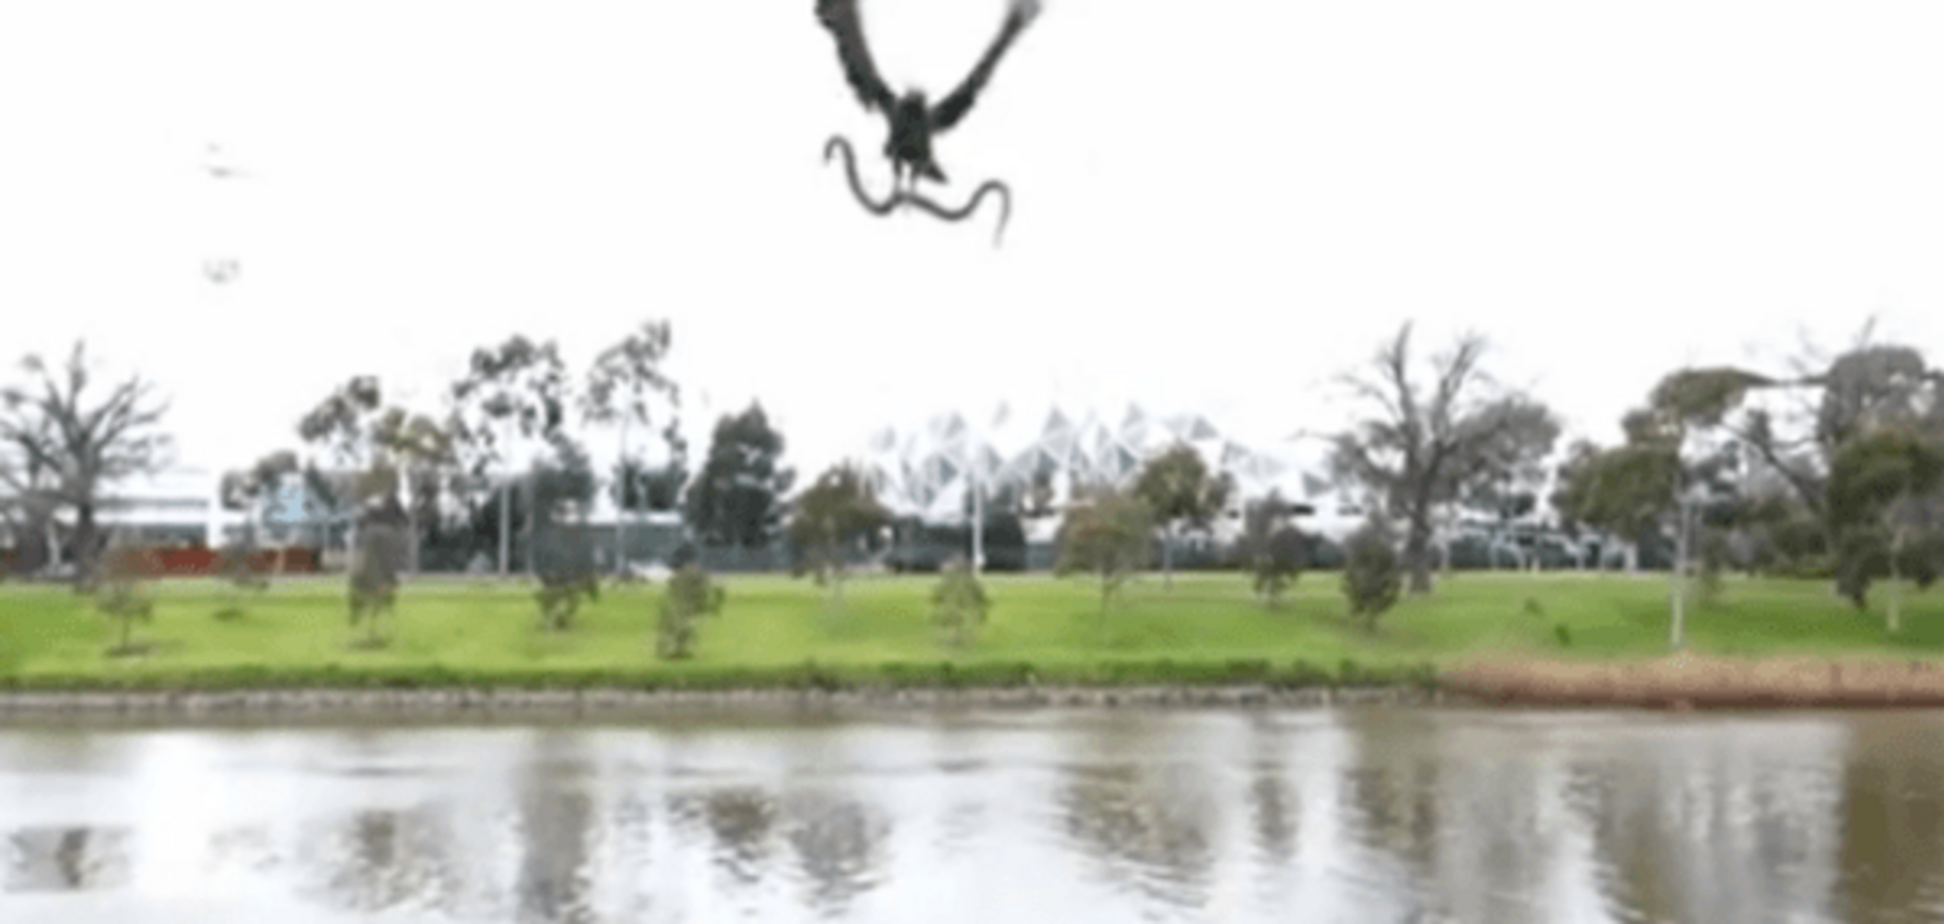 В Австралії яструб упустив змію на голови відпочивальникам